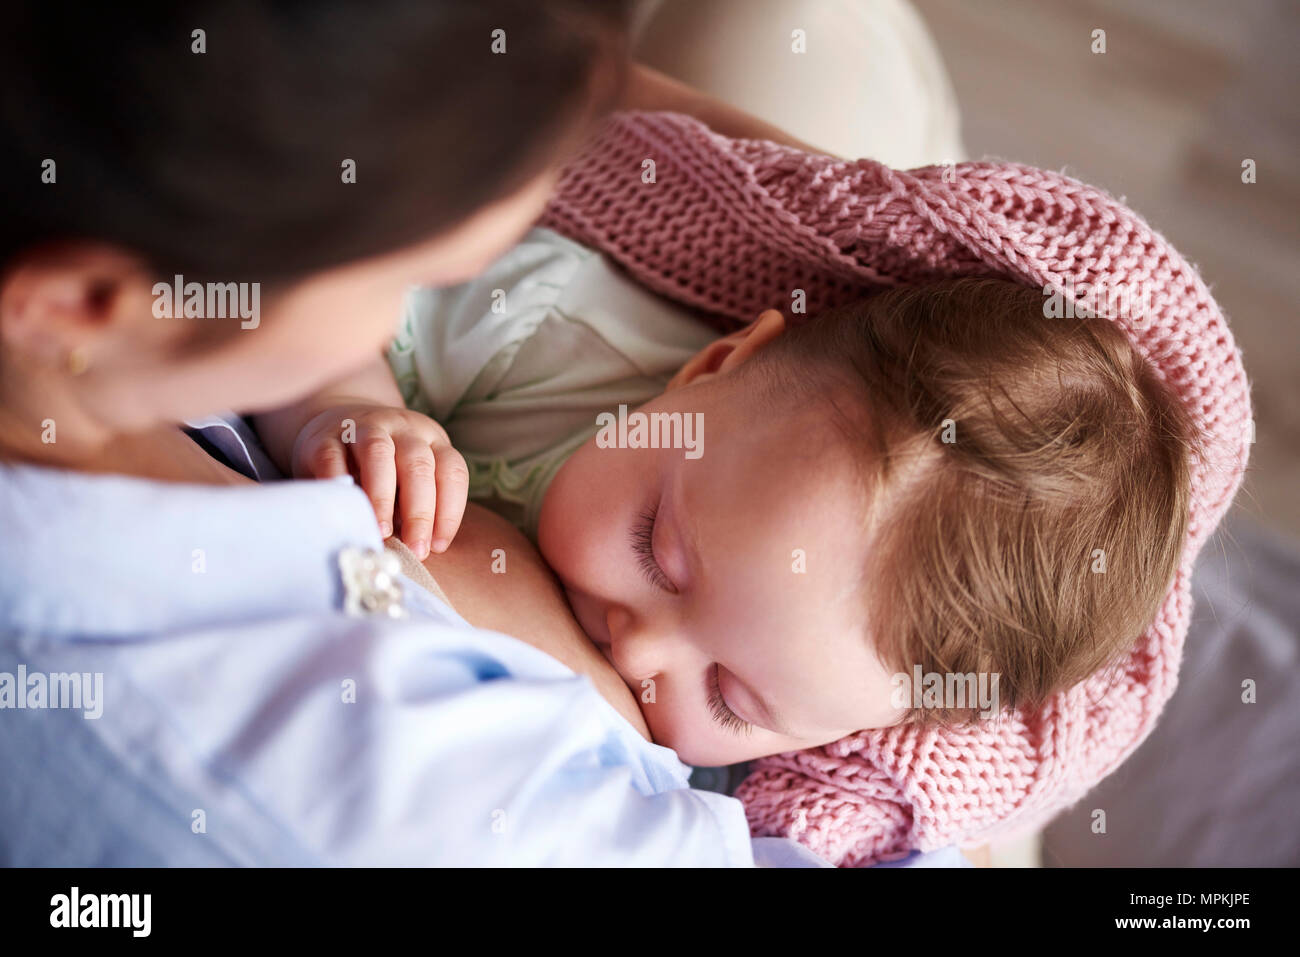 La madre de amamantar a su bebé Foto de stock